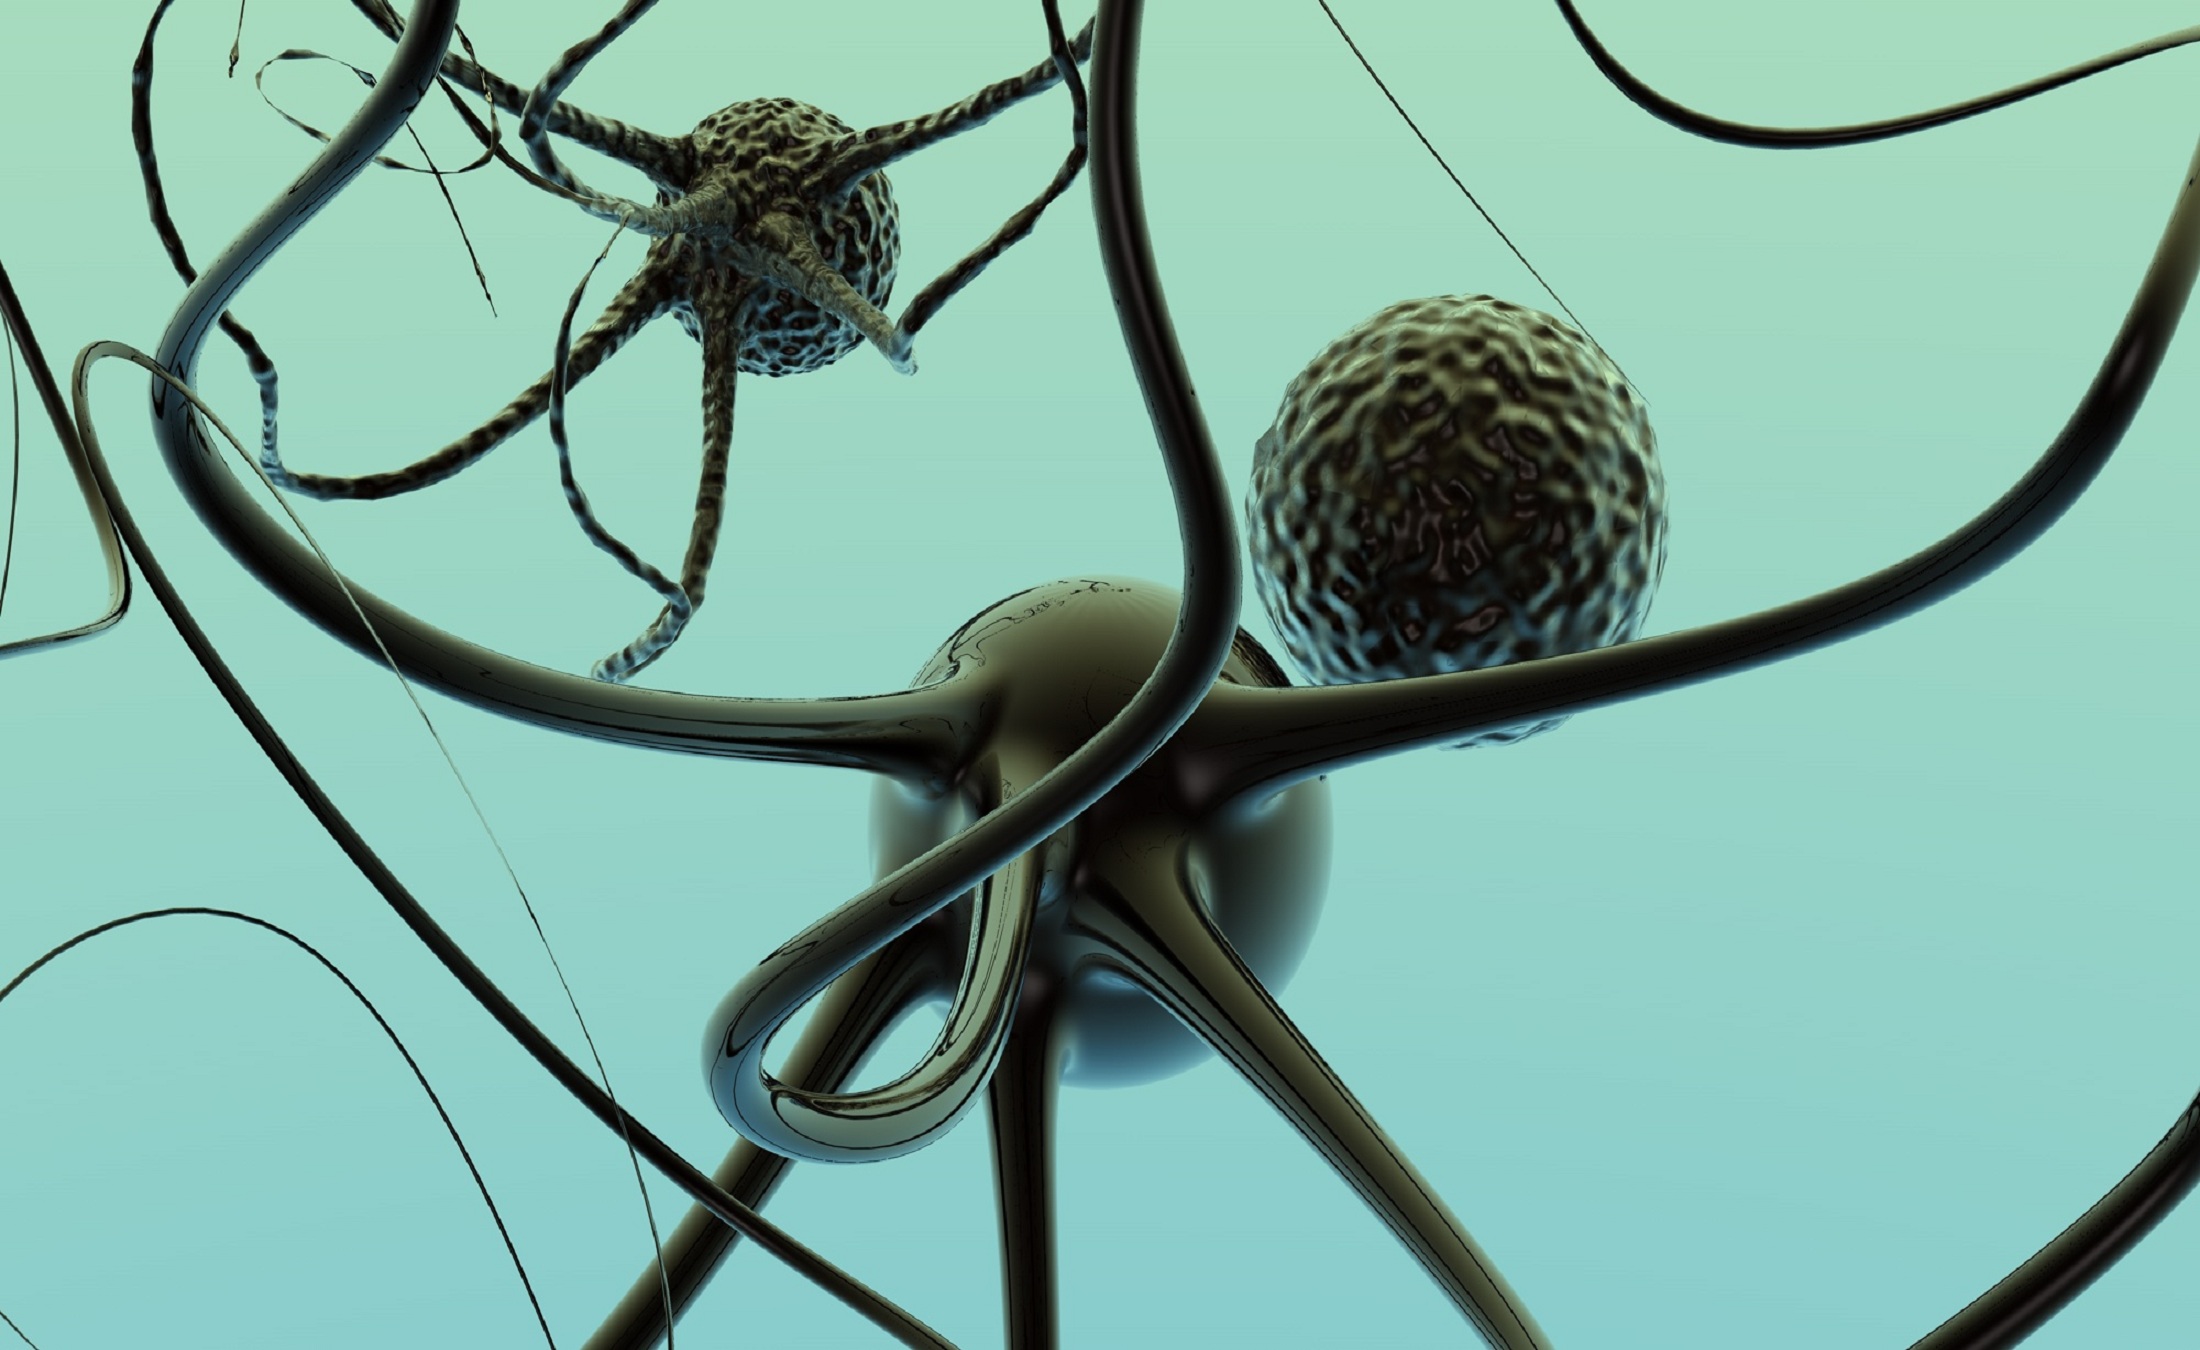 Los científicos han encontrado la estructura de las neuronas en el cerebro usando métodos matemáticos. Imagen: Maciej Urbanek. Fuente: FreeImages.